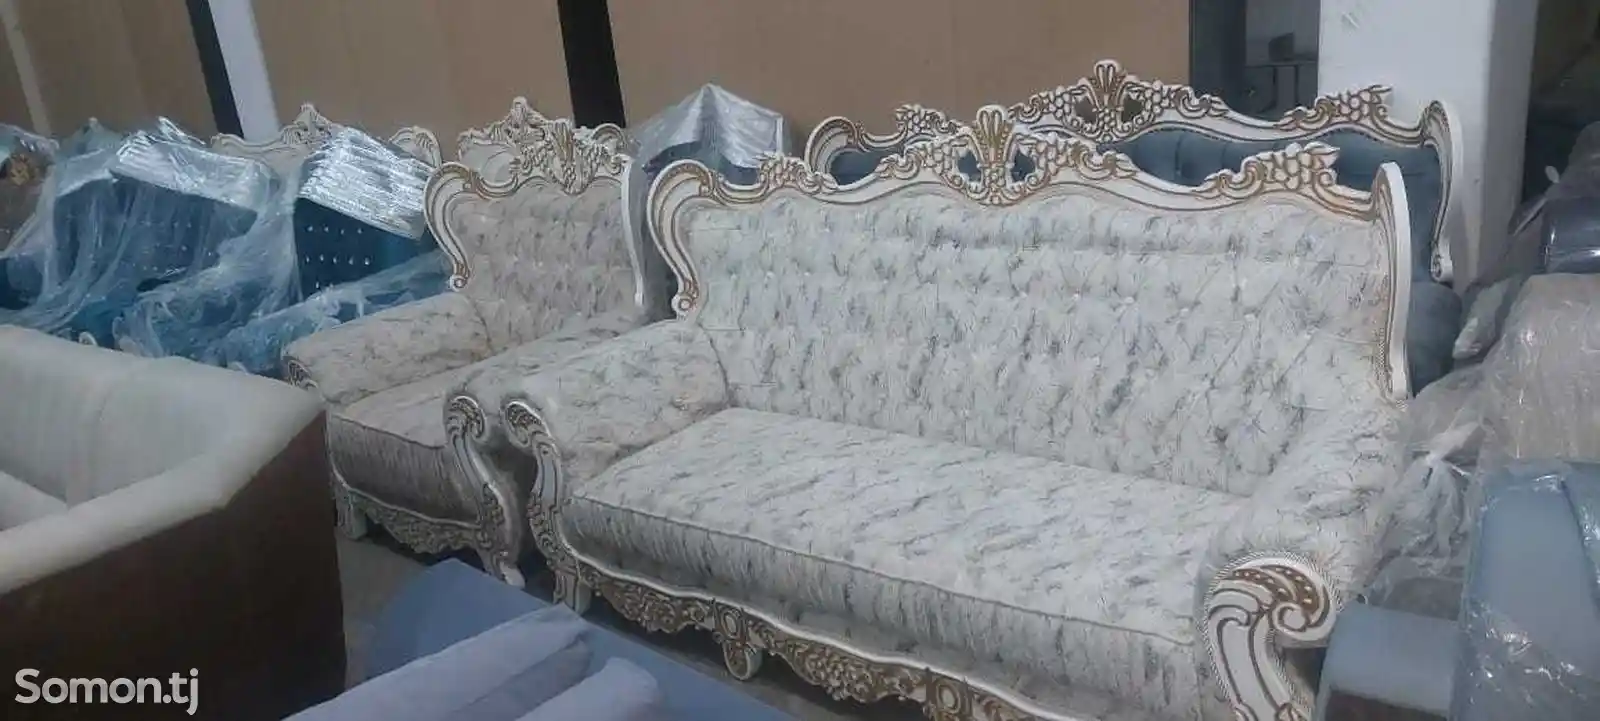 Королевский диван с креслами